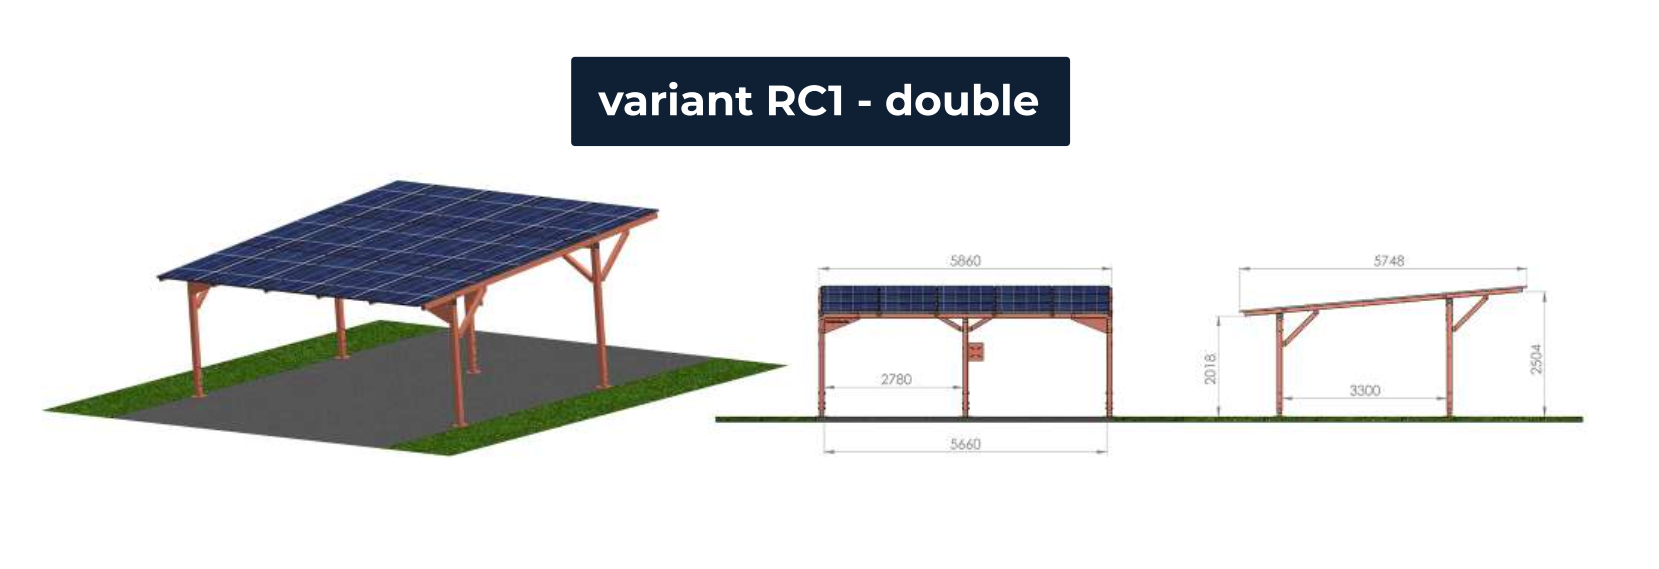 CARPORT - bezpečný přístřešek pro vozidla s výhodou dobíjení solární energií ve variantě RC1 double - pro dvě parkující vozidla